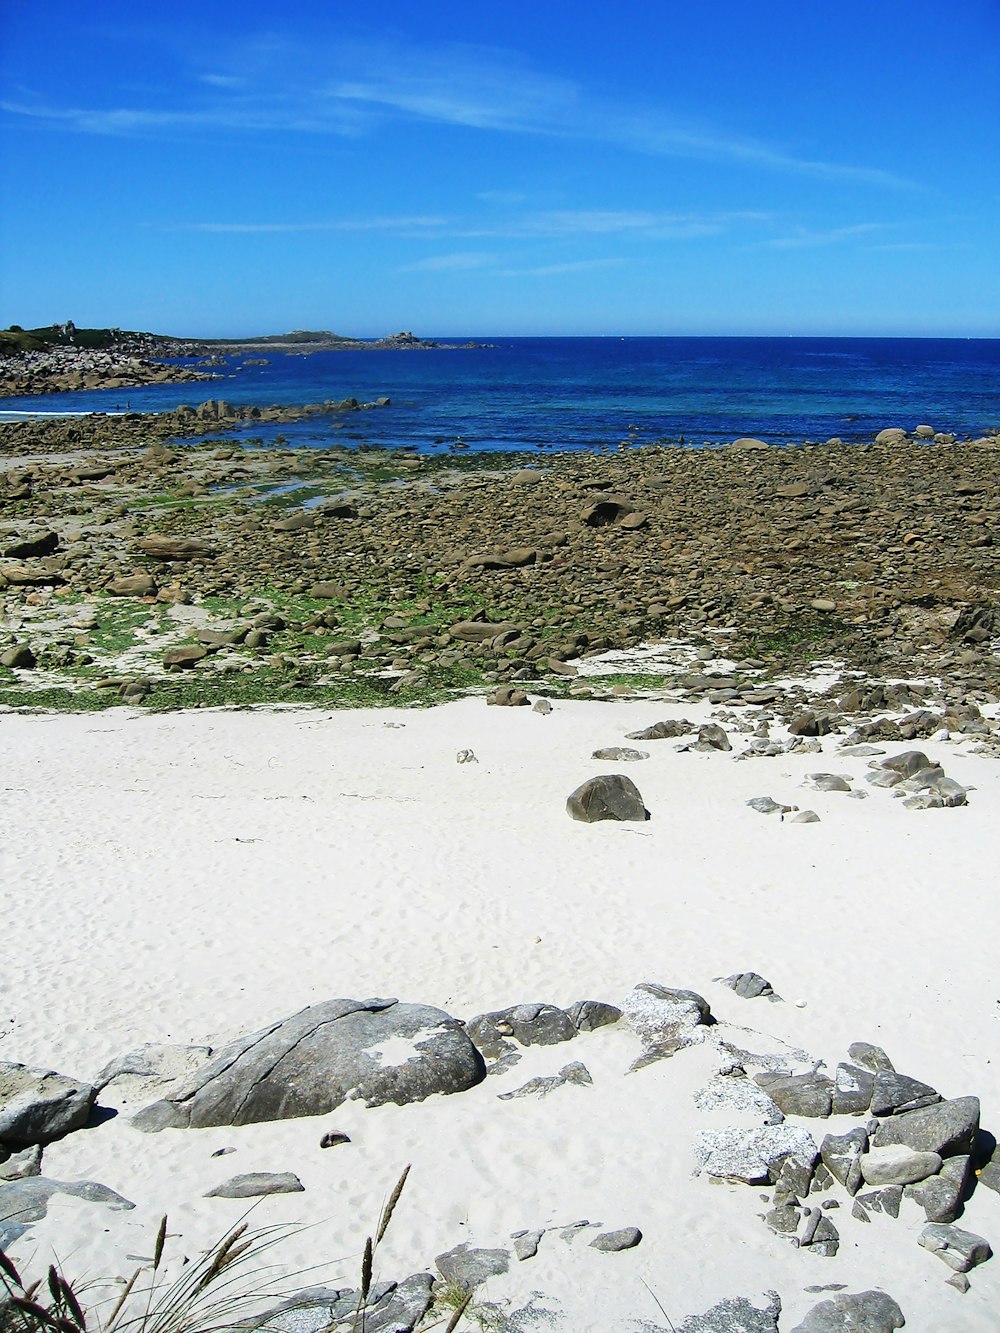 roches grises sur la plage de sable blanc pendant la journée